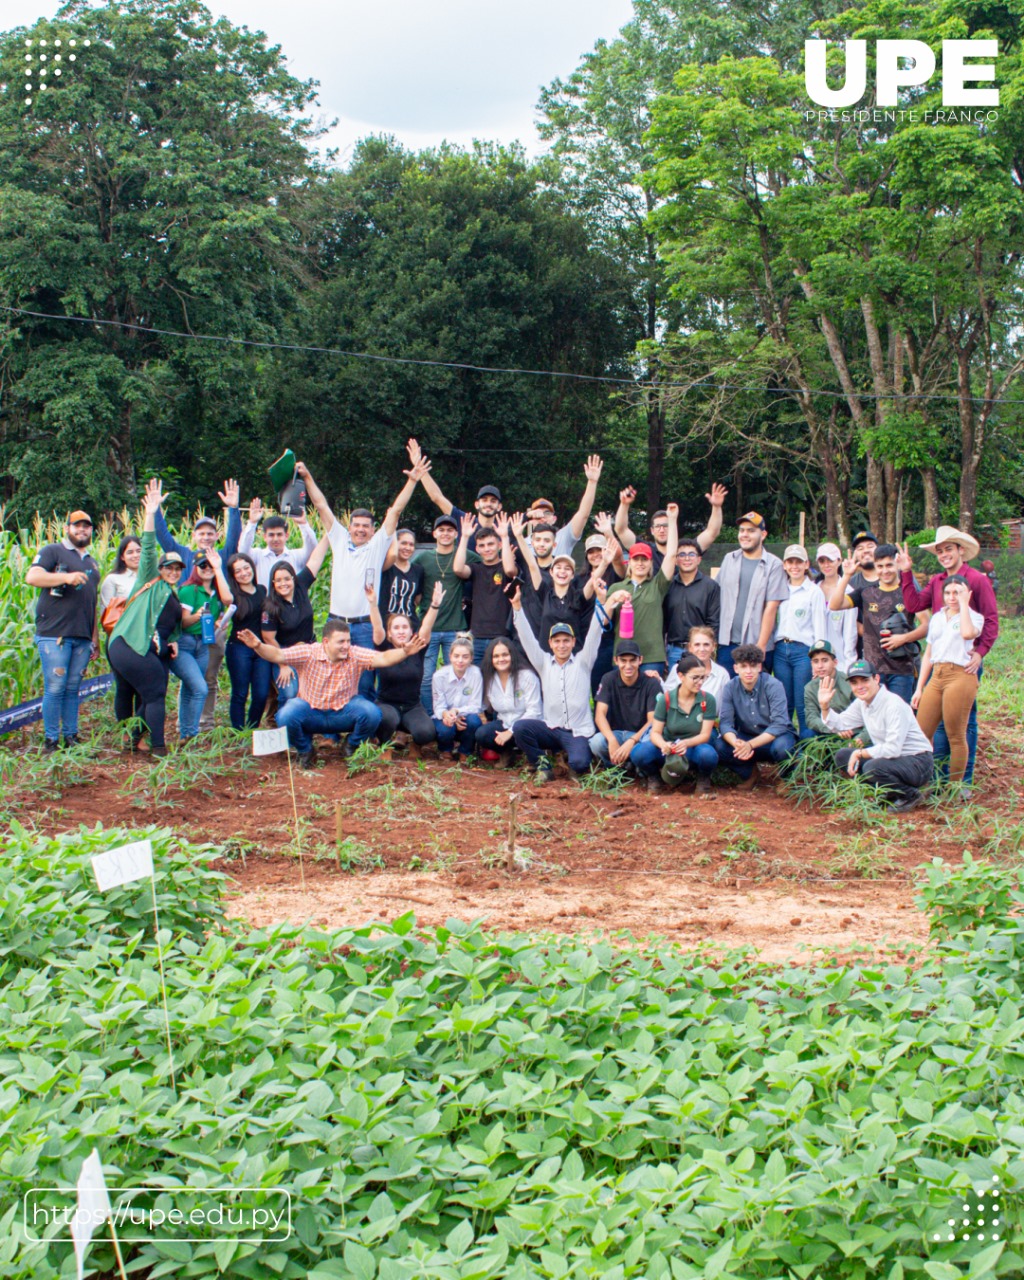 Estudiantes de Agronomía UPE exponen trabajos de campo: Clausura del Semestre